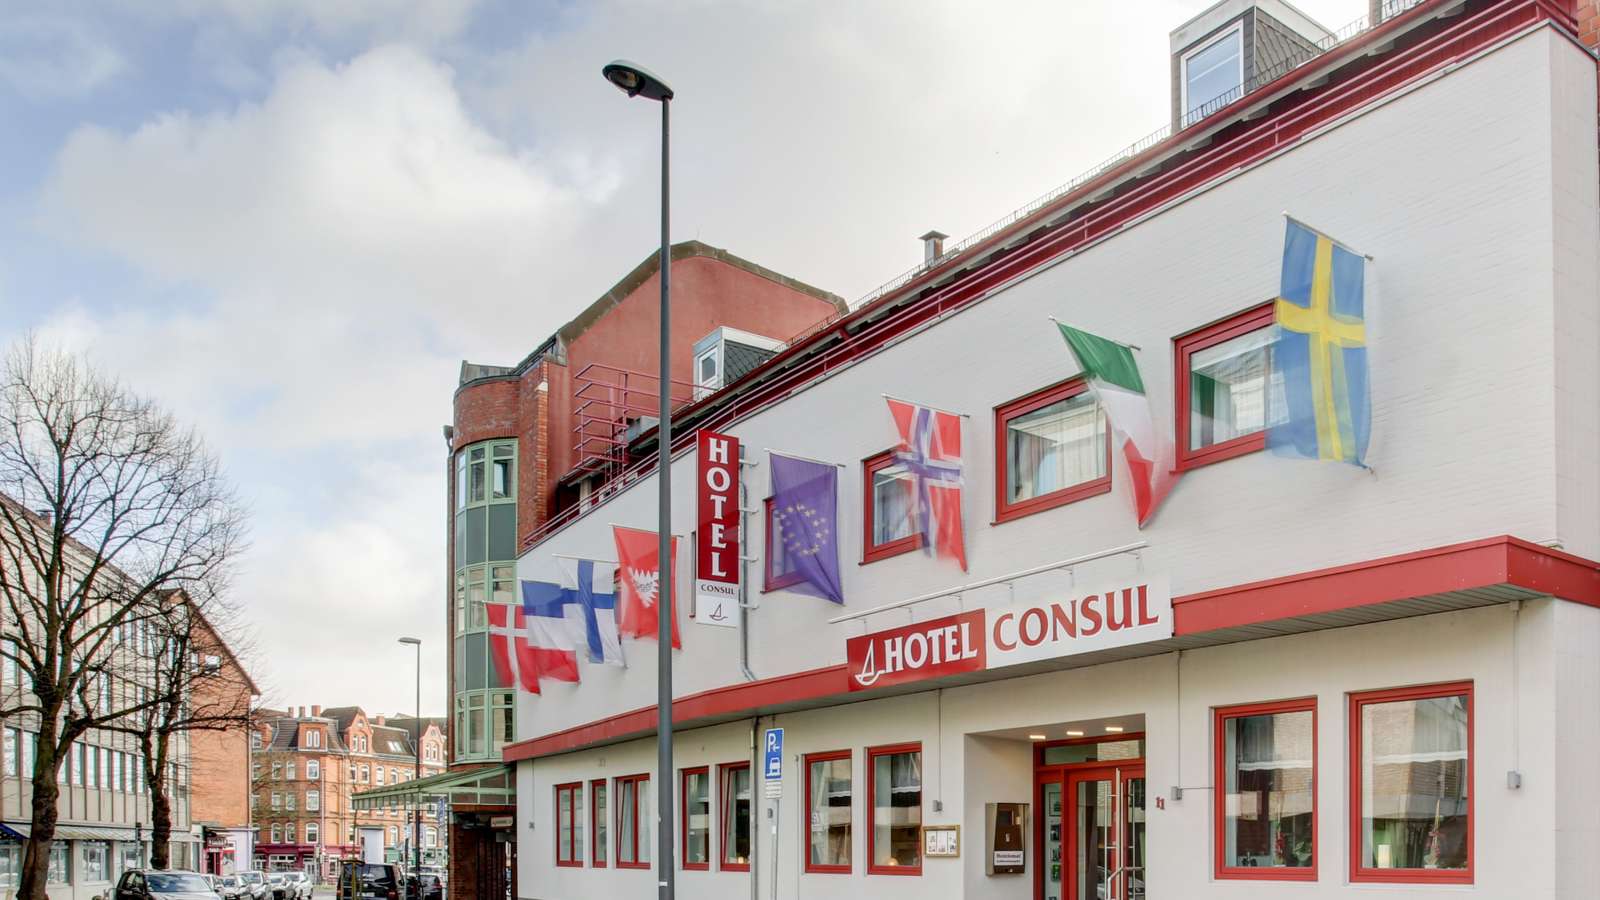 Aussenansicht des Centro Hotel Consul in Kiel